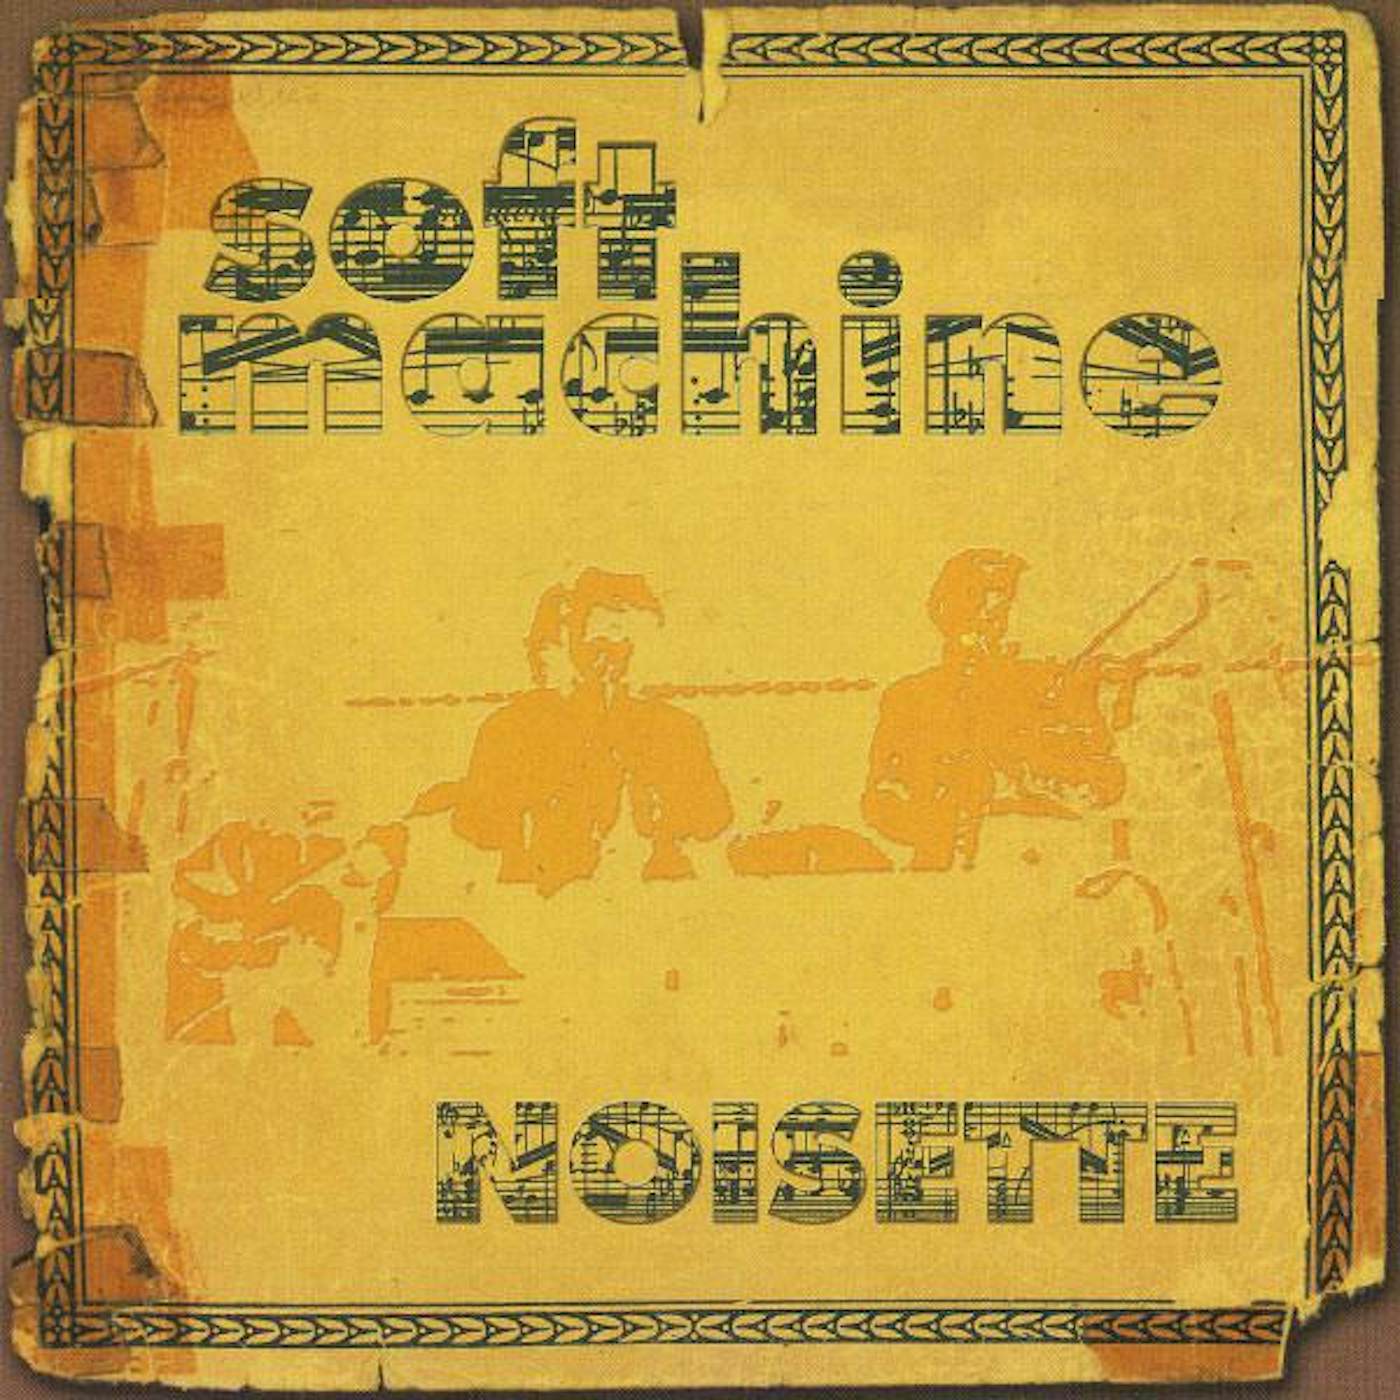 Soft Machine NOISETTE CD